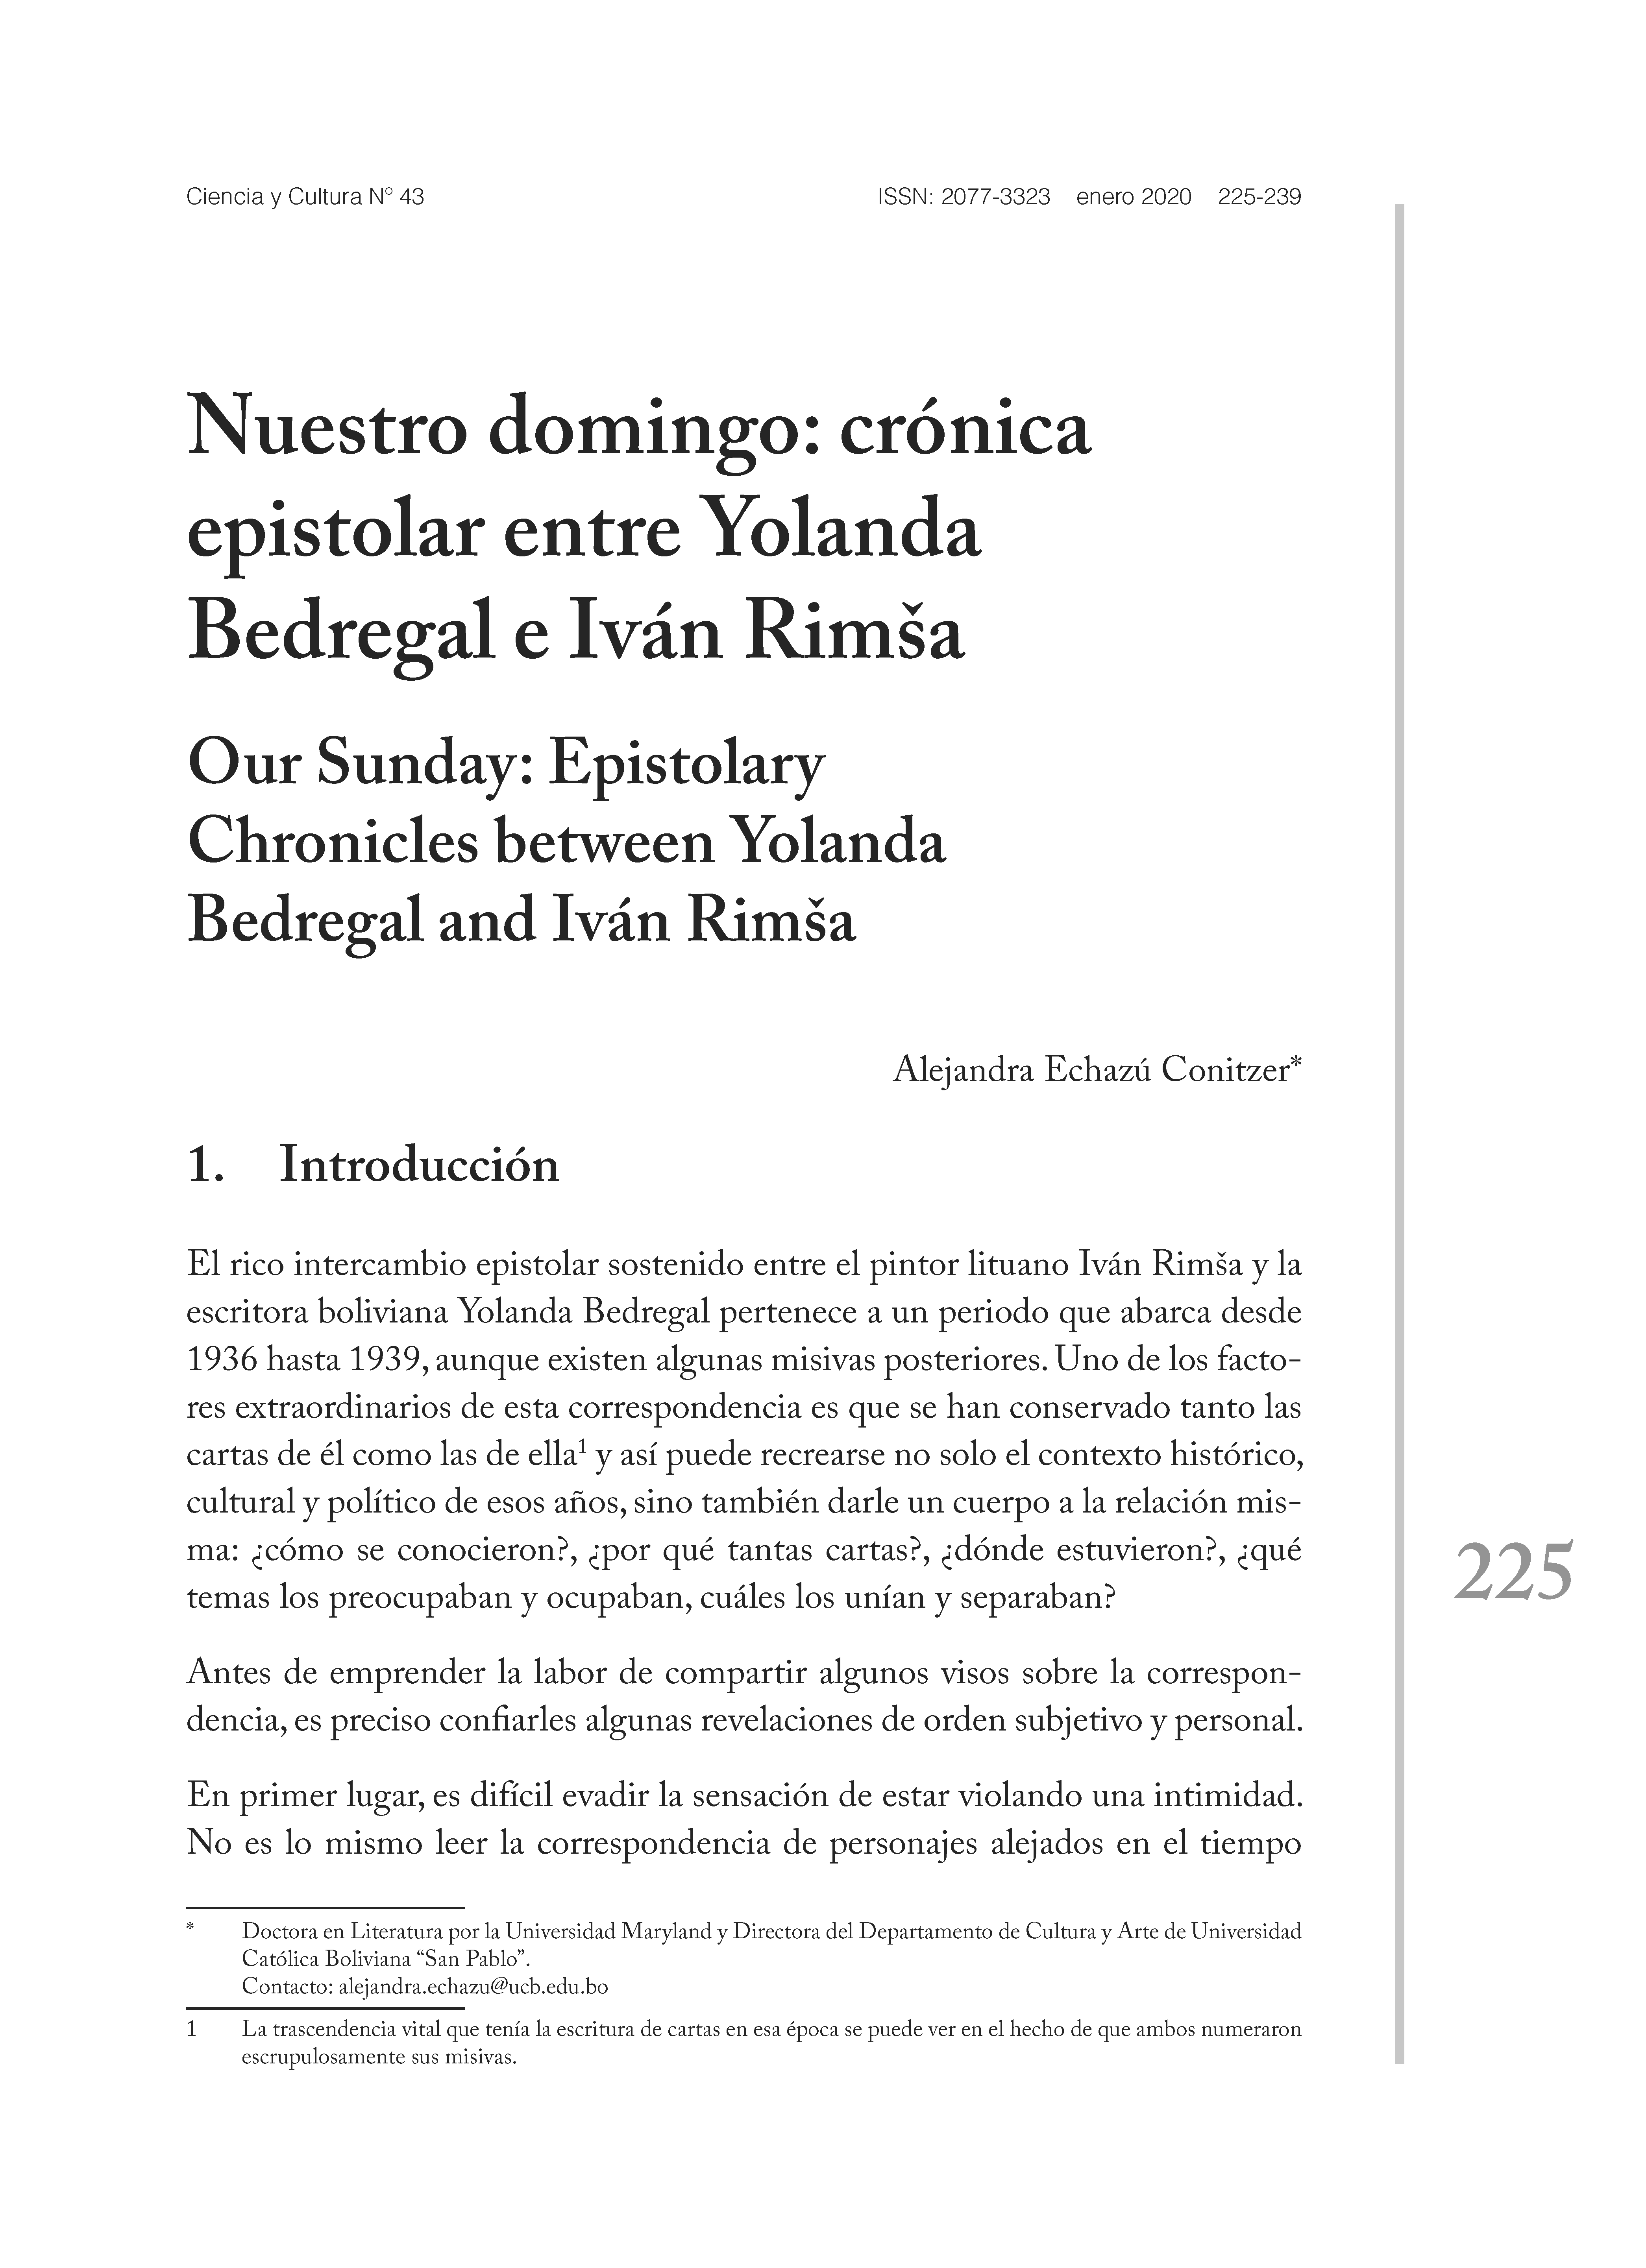 Nuestro domingo: crónica epistolar entre Yolanda Bedregal e Iván Rimša